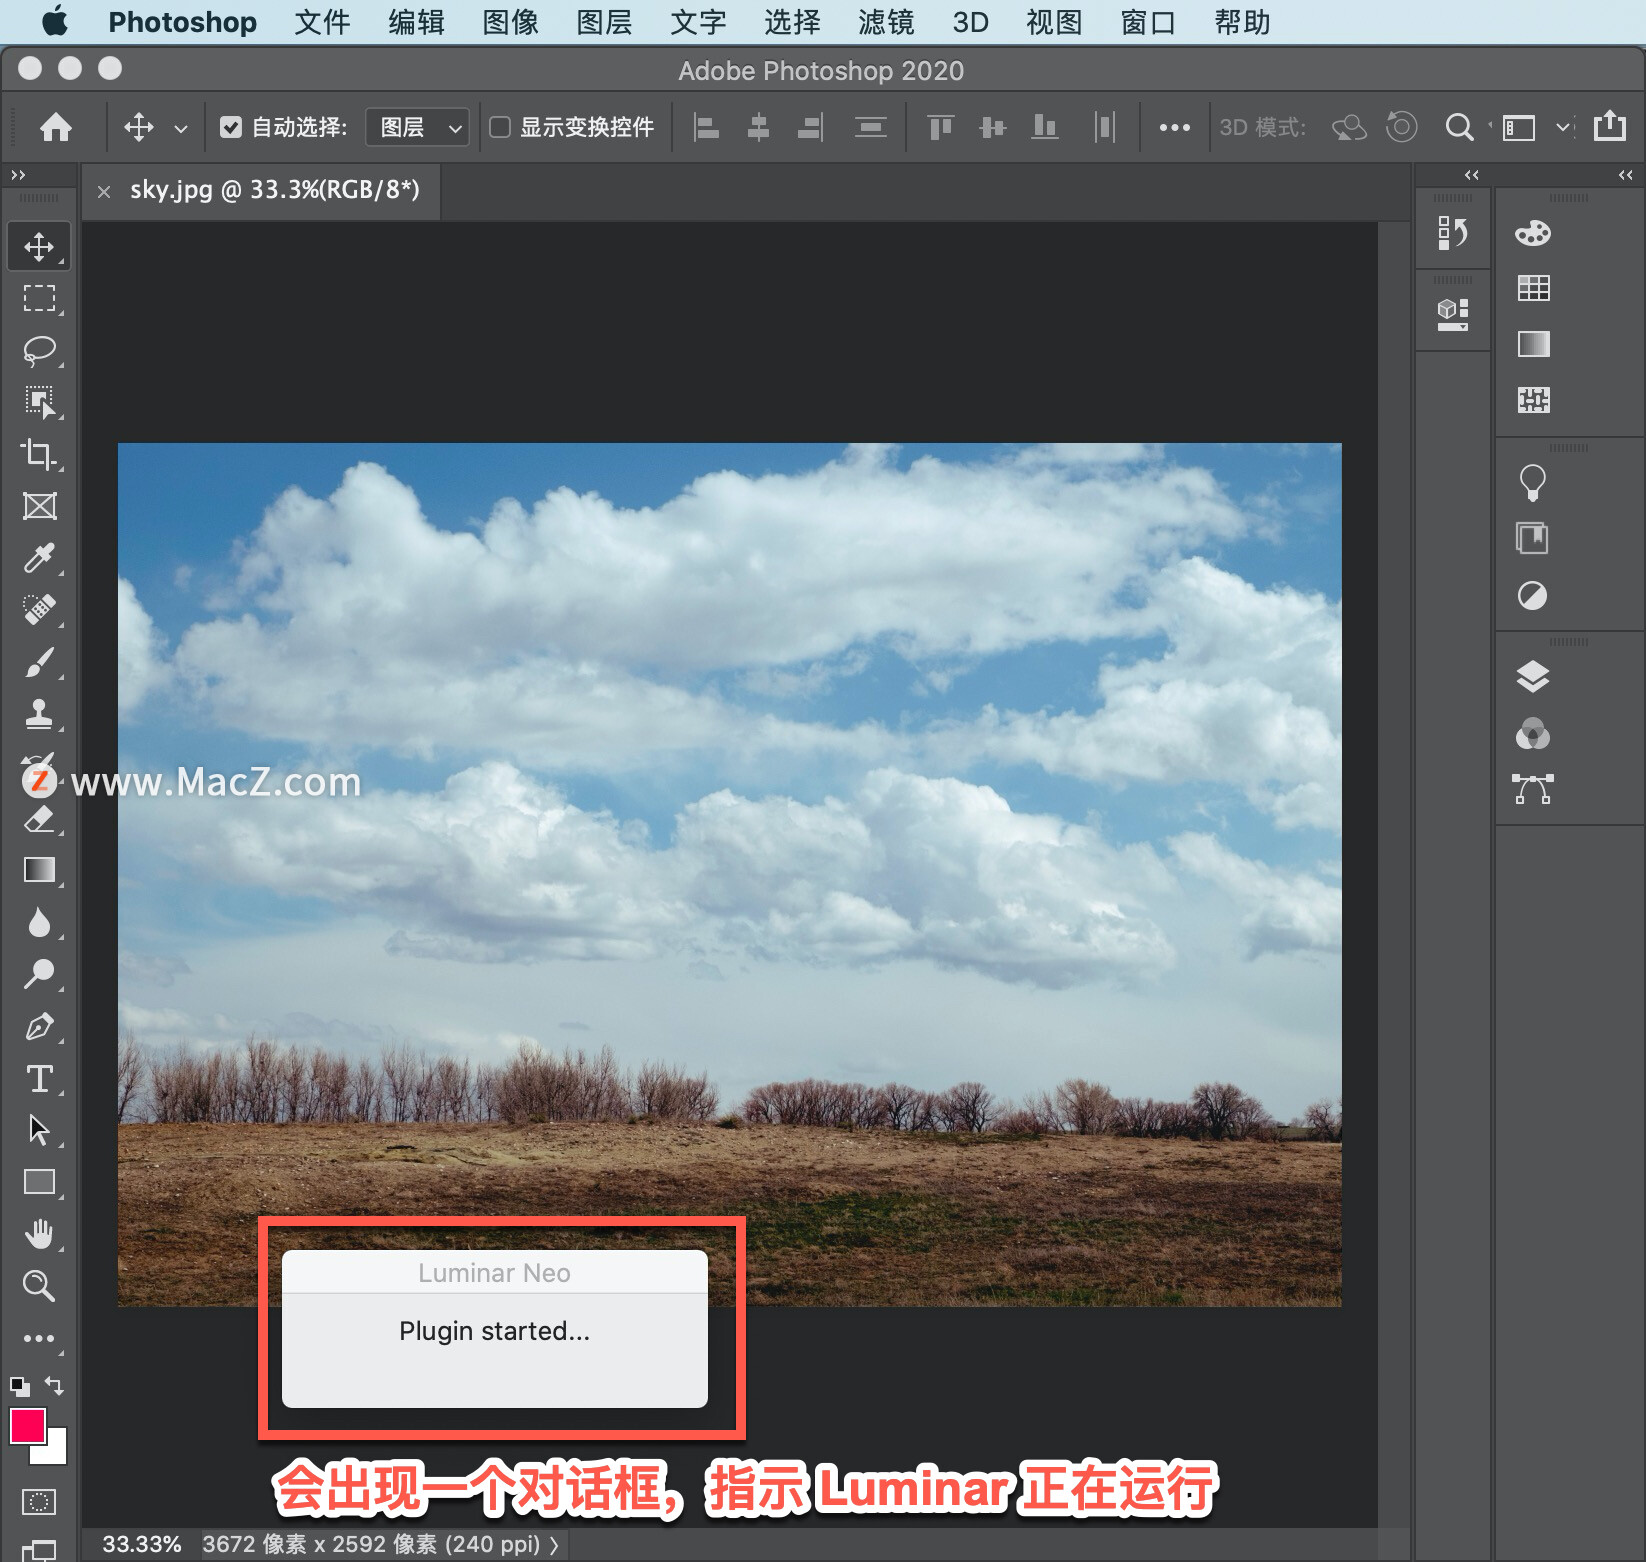 Luminar Neo 教程「3」，如何在 Photoshop 中使用 Luminar Neo？